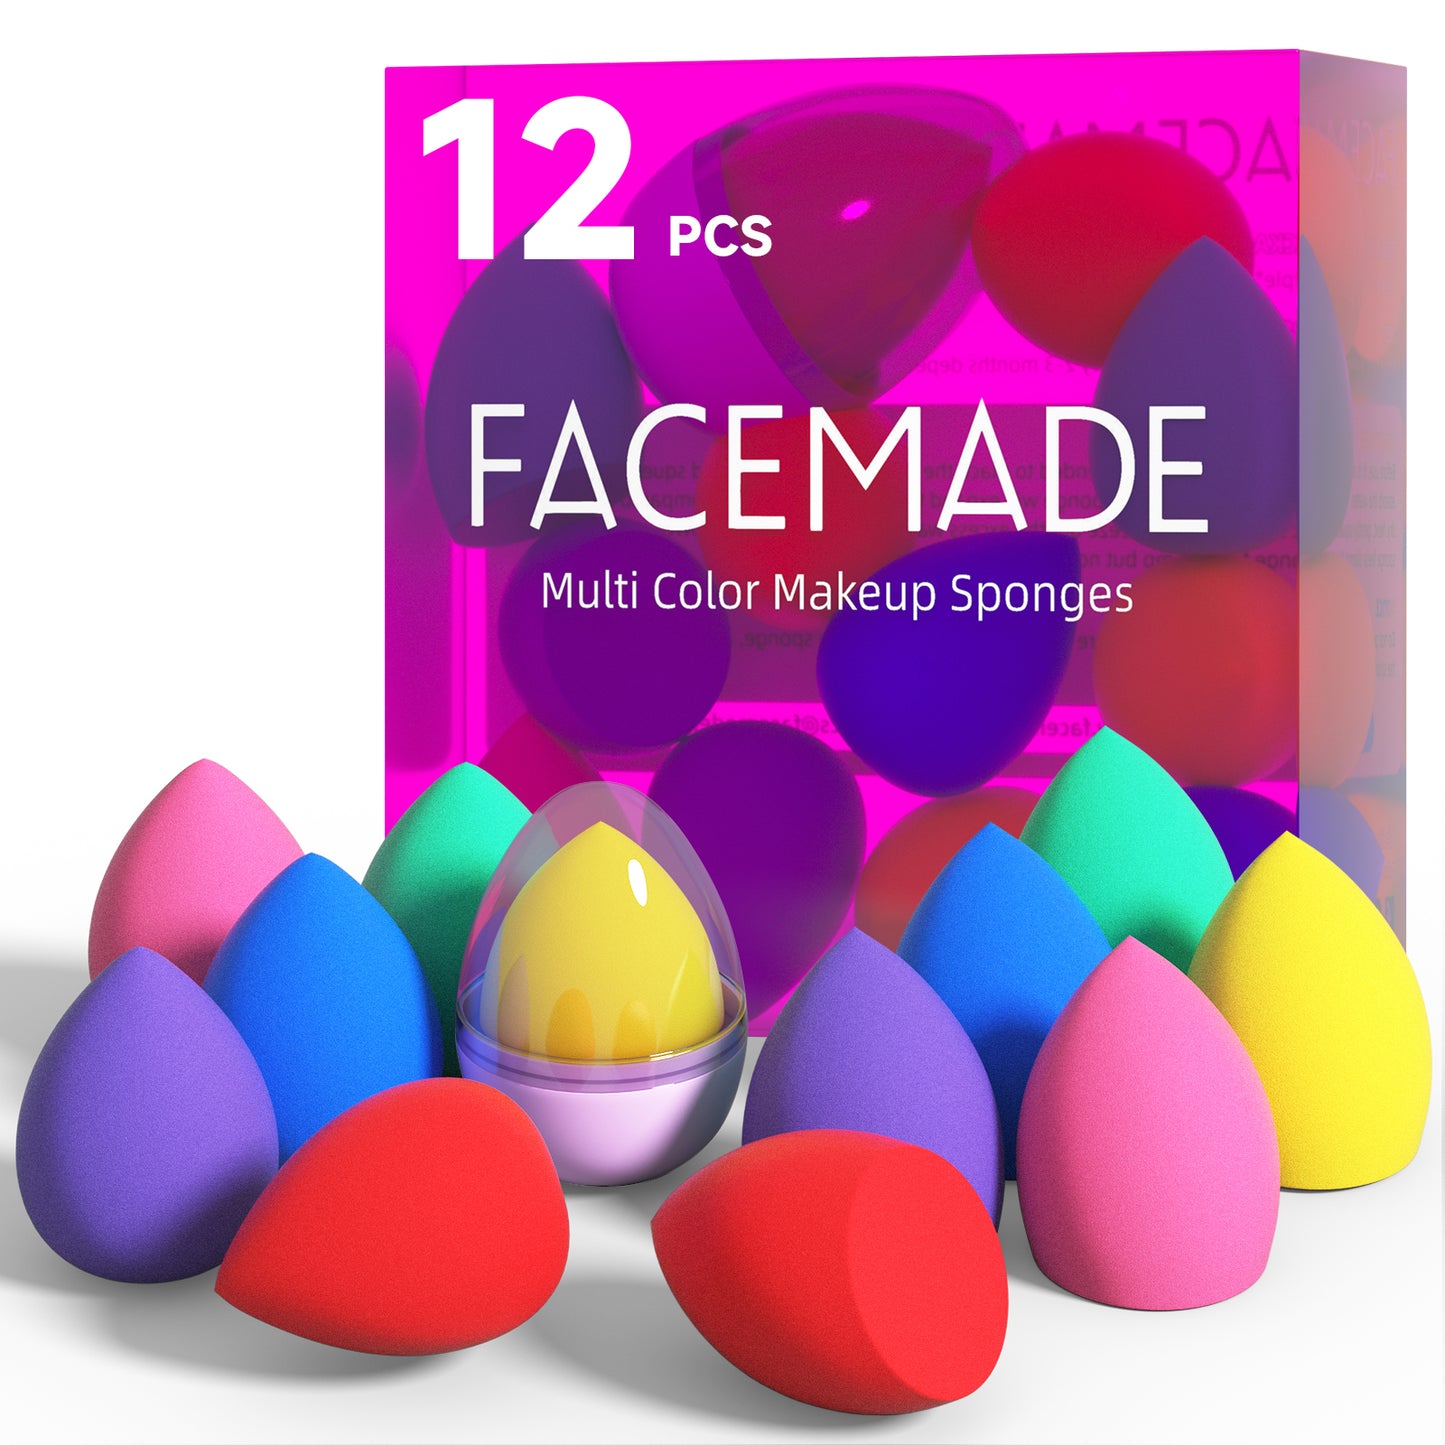 FACEMADE 12 PCS Makeup Sponge Set and 1 Sponge Holder, Makeup Sponges for Foundation